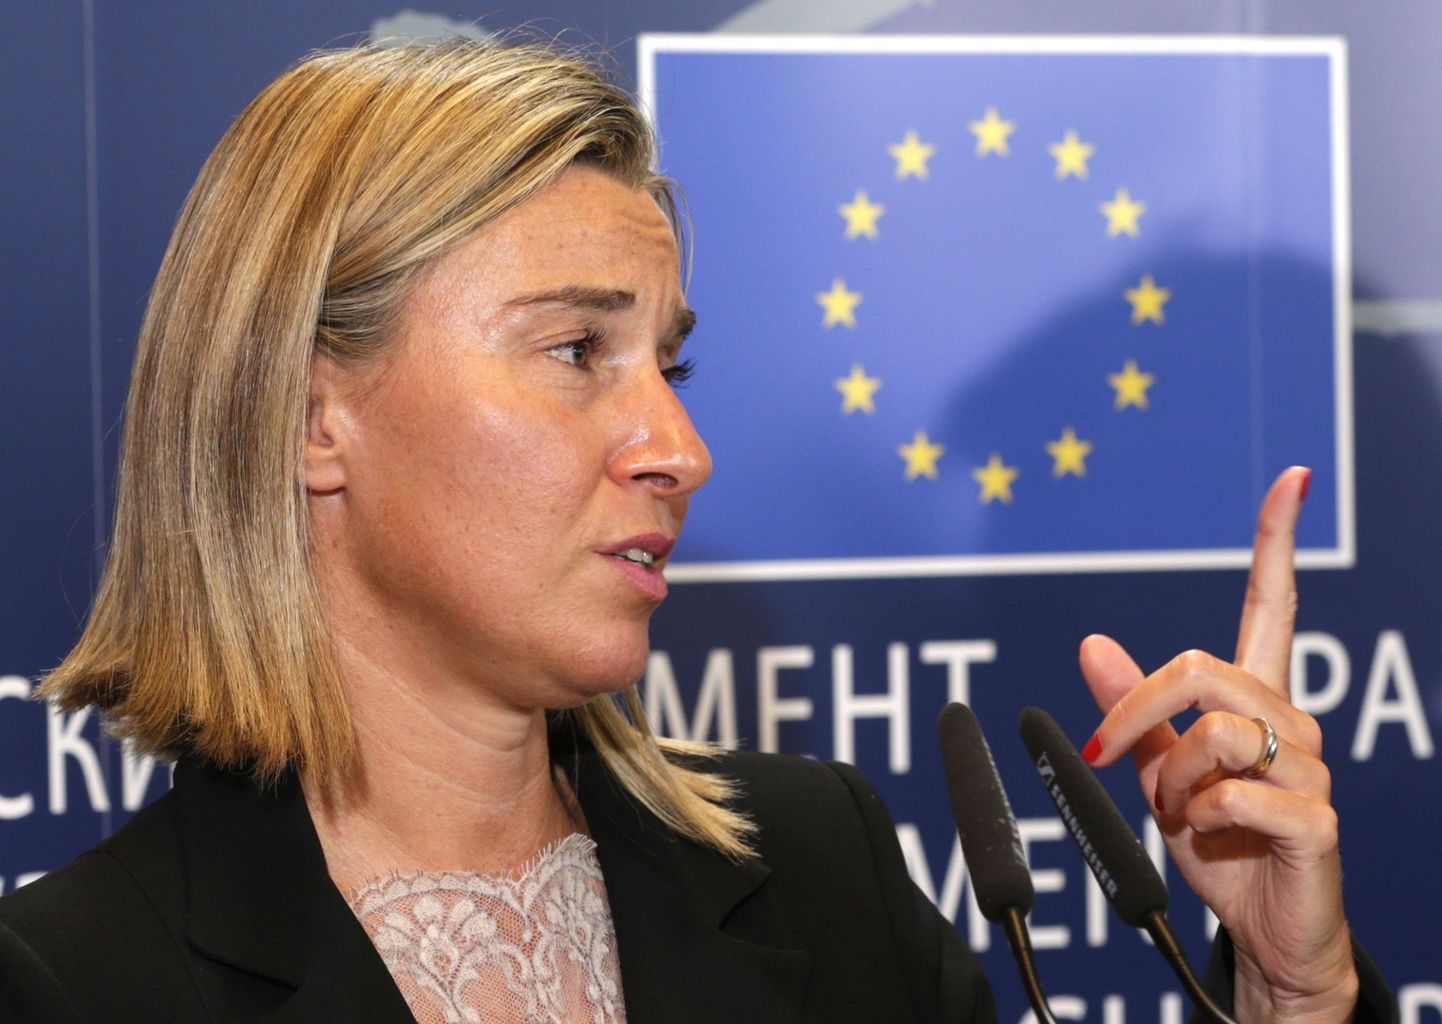 Itaalia välisminister Federica Mogherini, kellest saab Euroopa Liidu välispoliitikajuht.